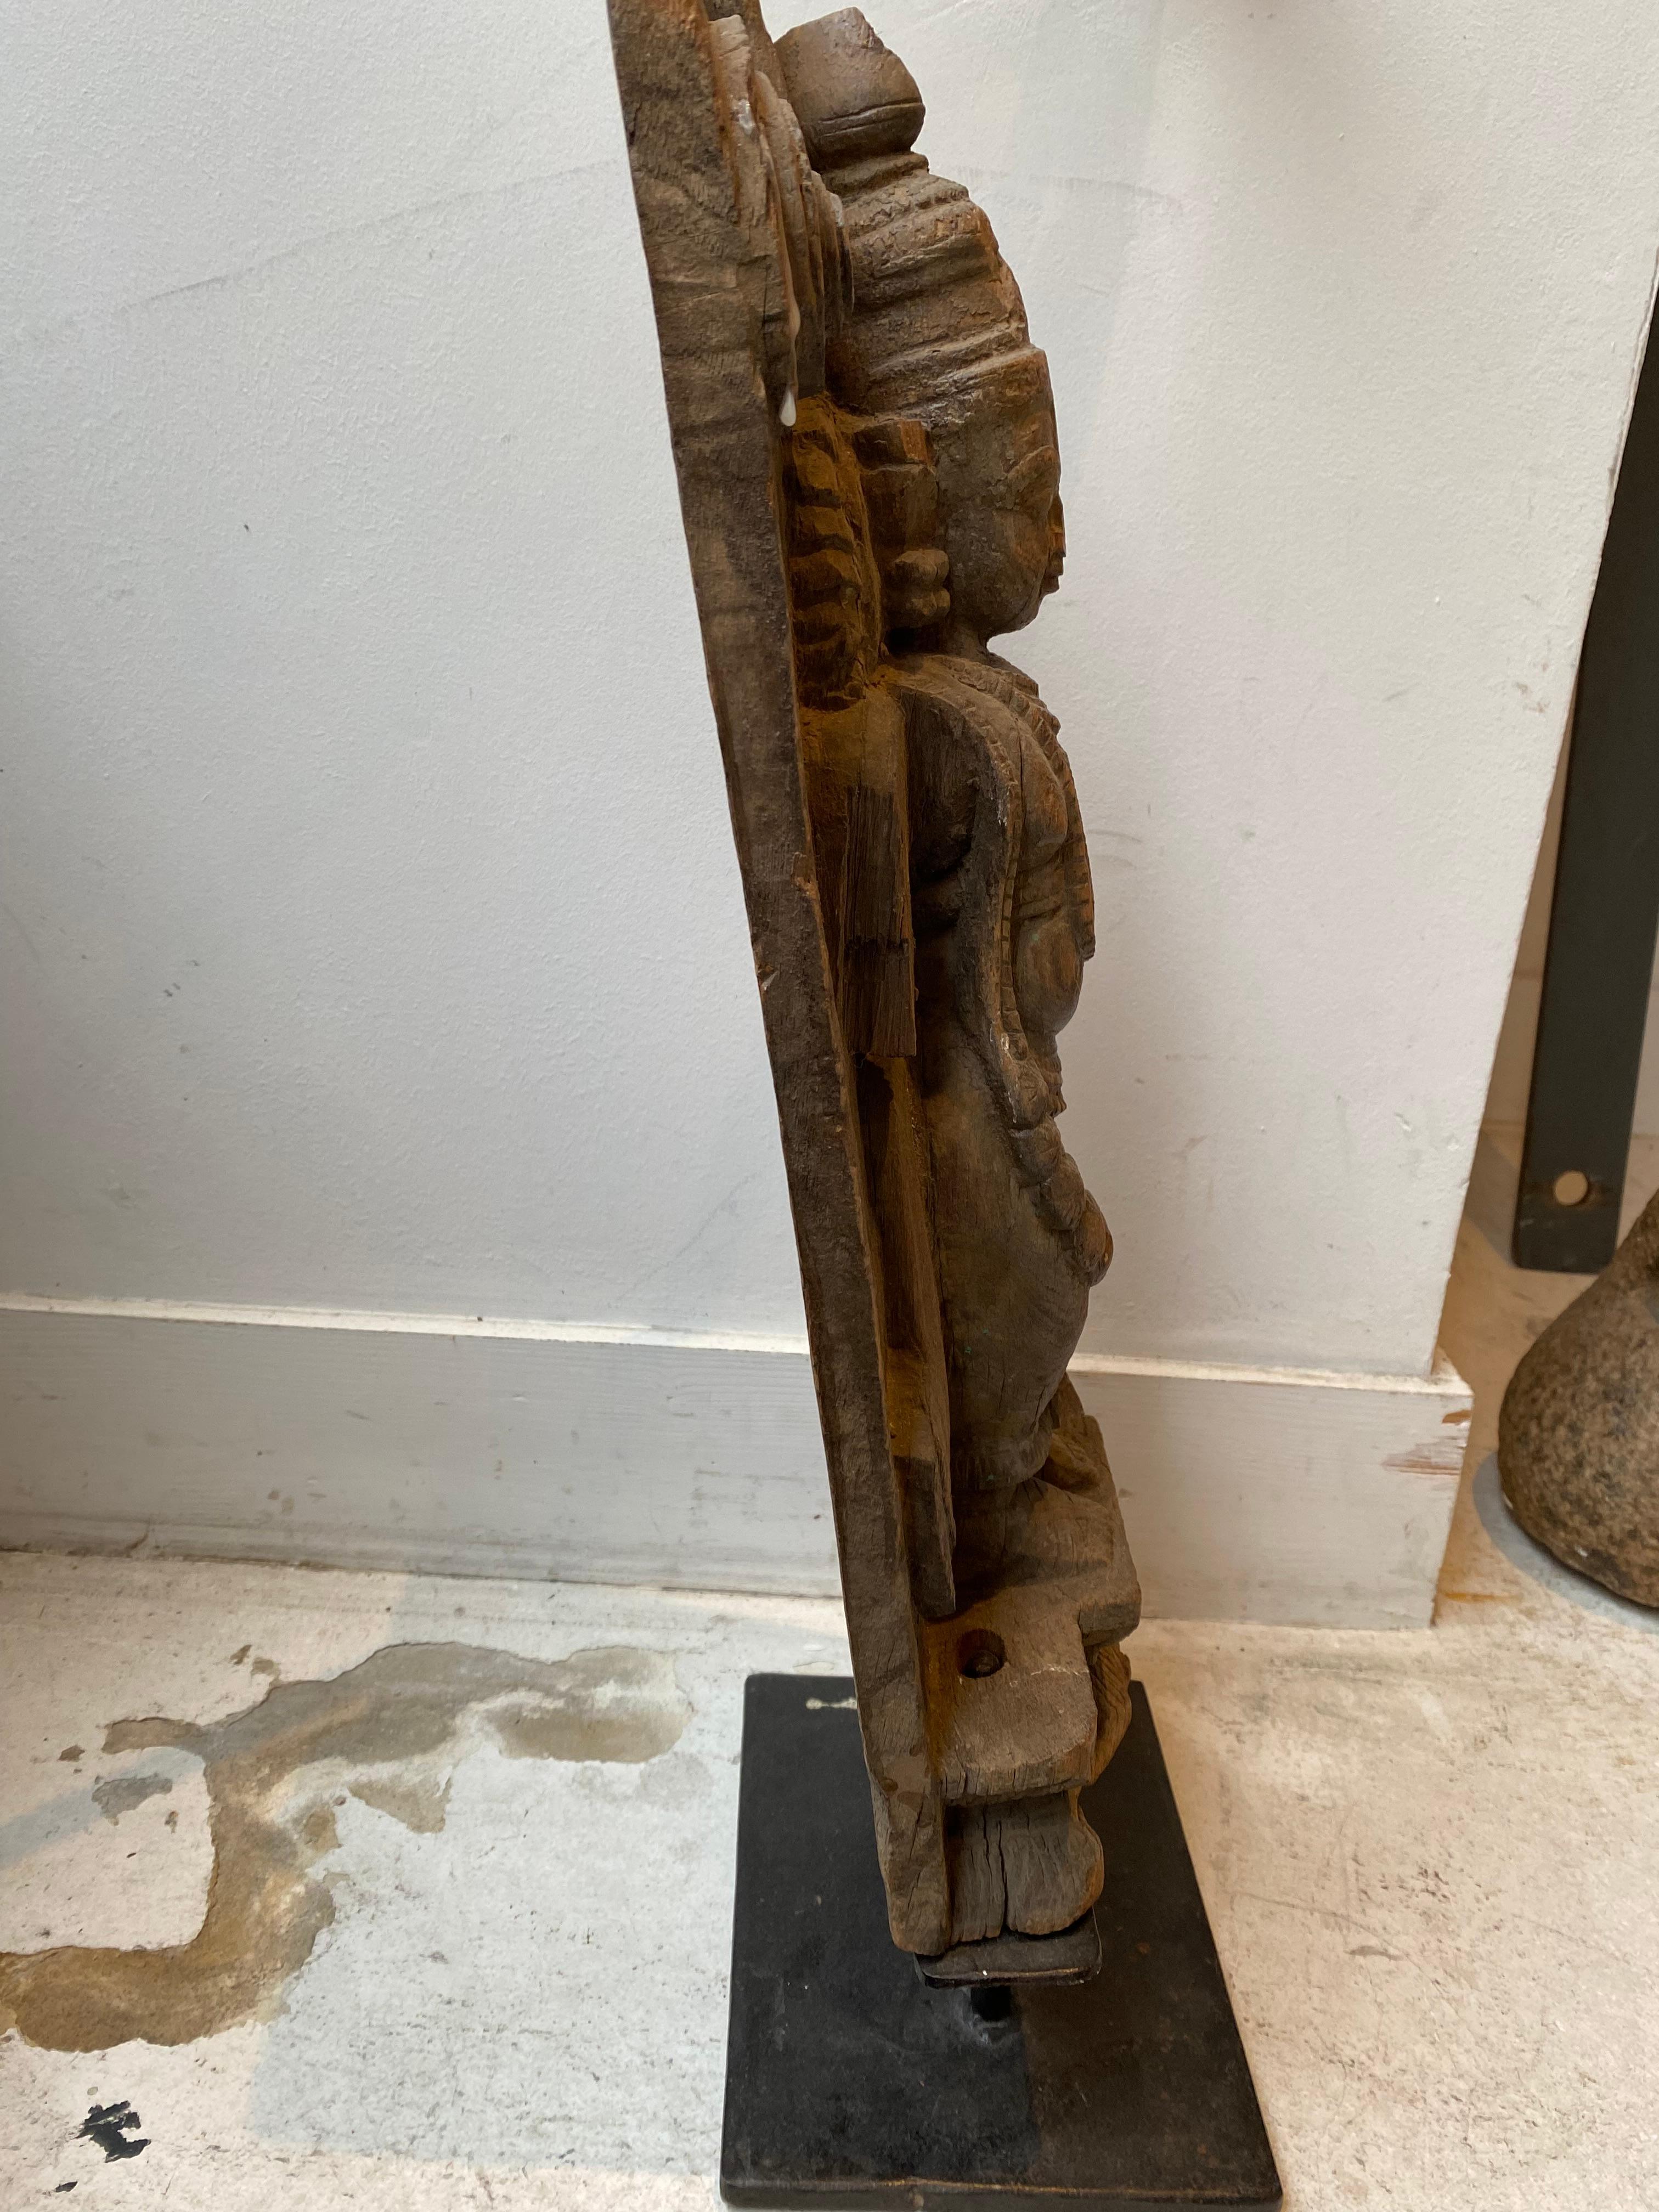 sculpture en bois représentant une femme
Il est monté sur une base métallique moderne
Il est originaire du Rajasthan 